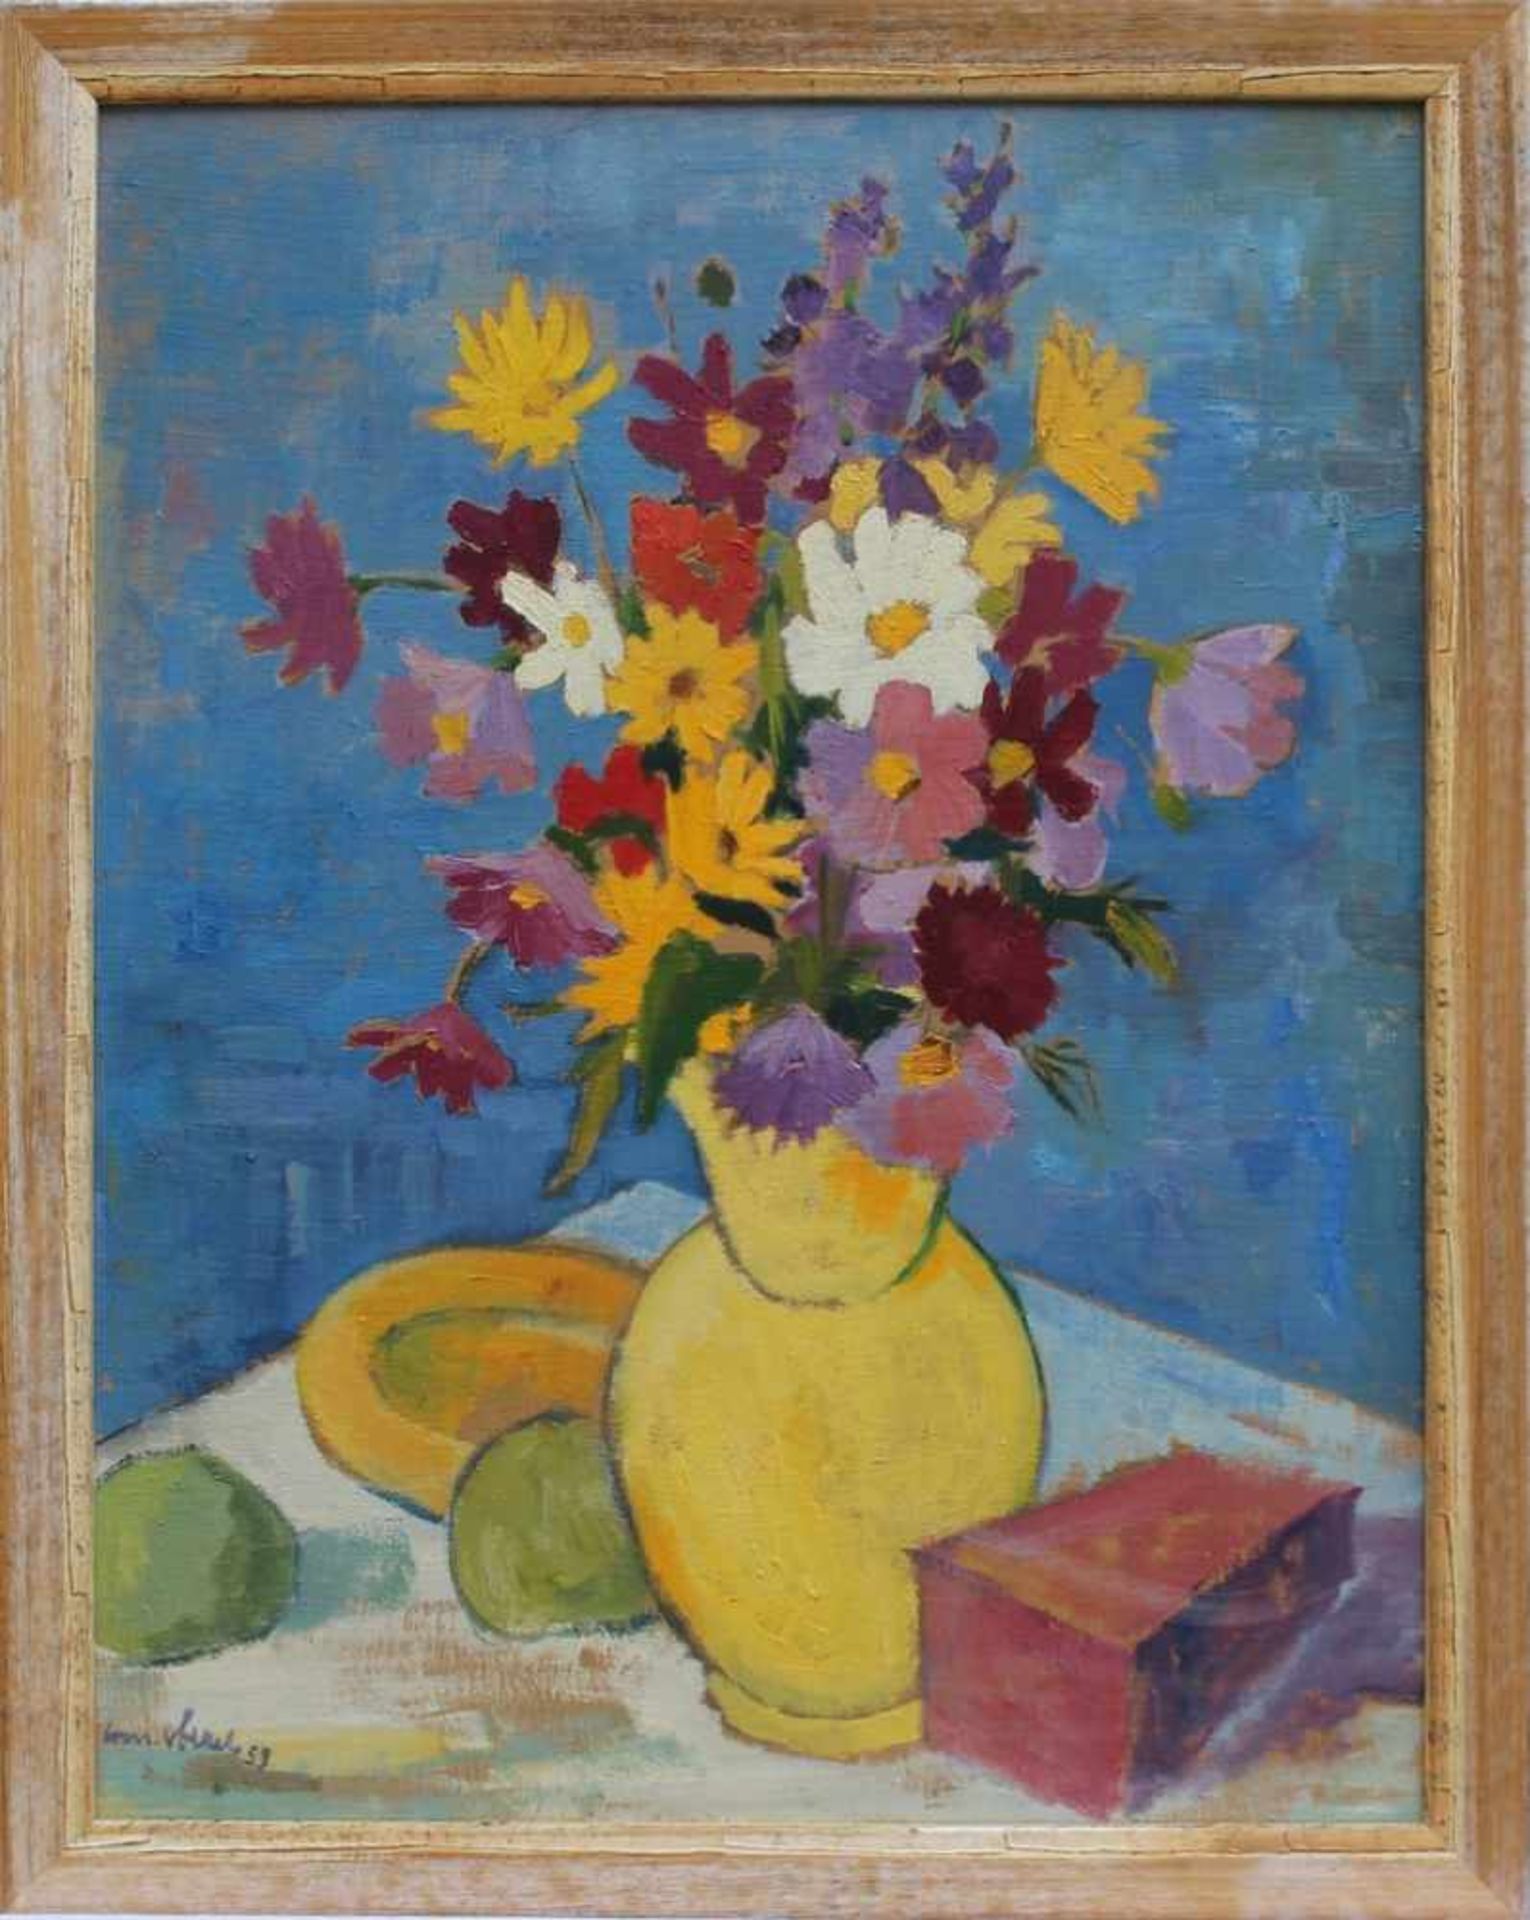 Völkel, Conrad 1897 Nürnberg - 1965 Freising, "Blumenstrauß in der Vase", Öl/Hartfaser, bunte